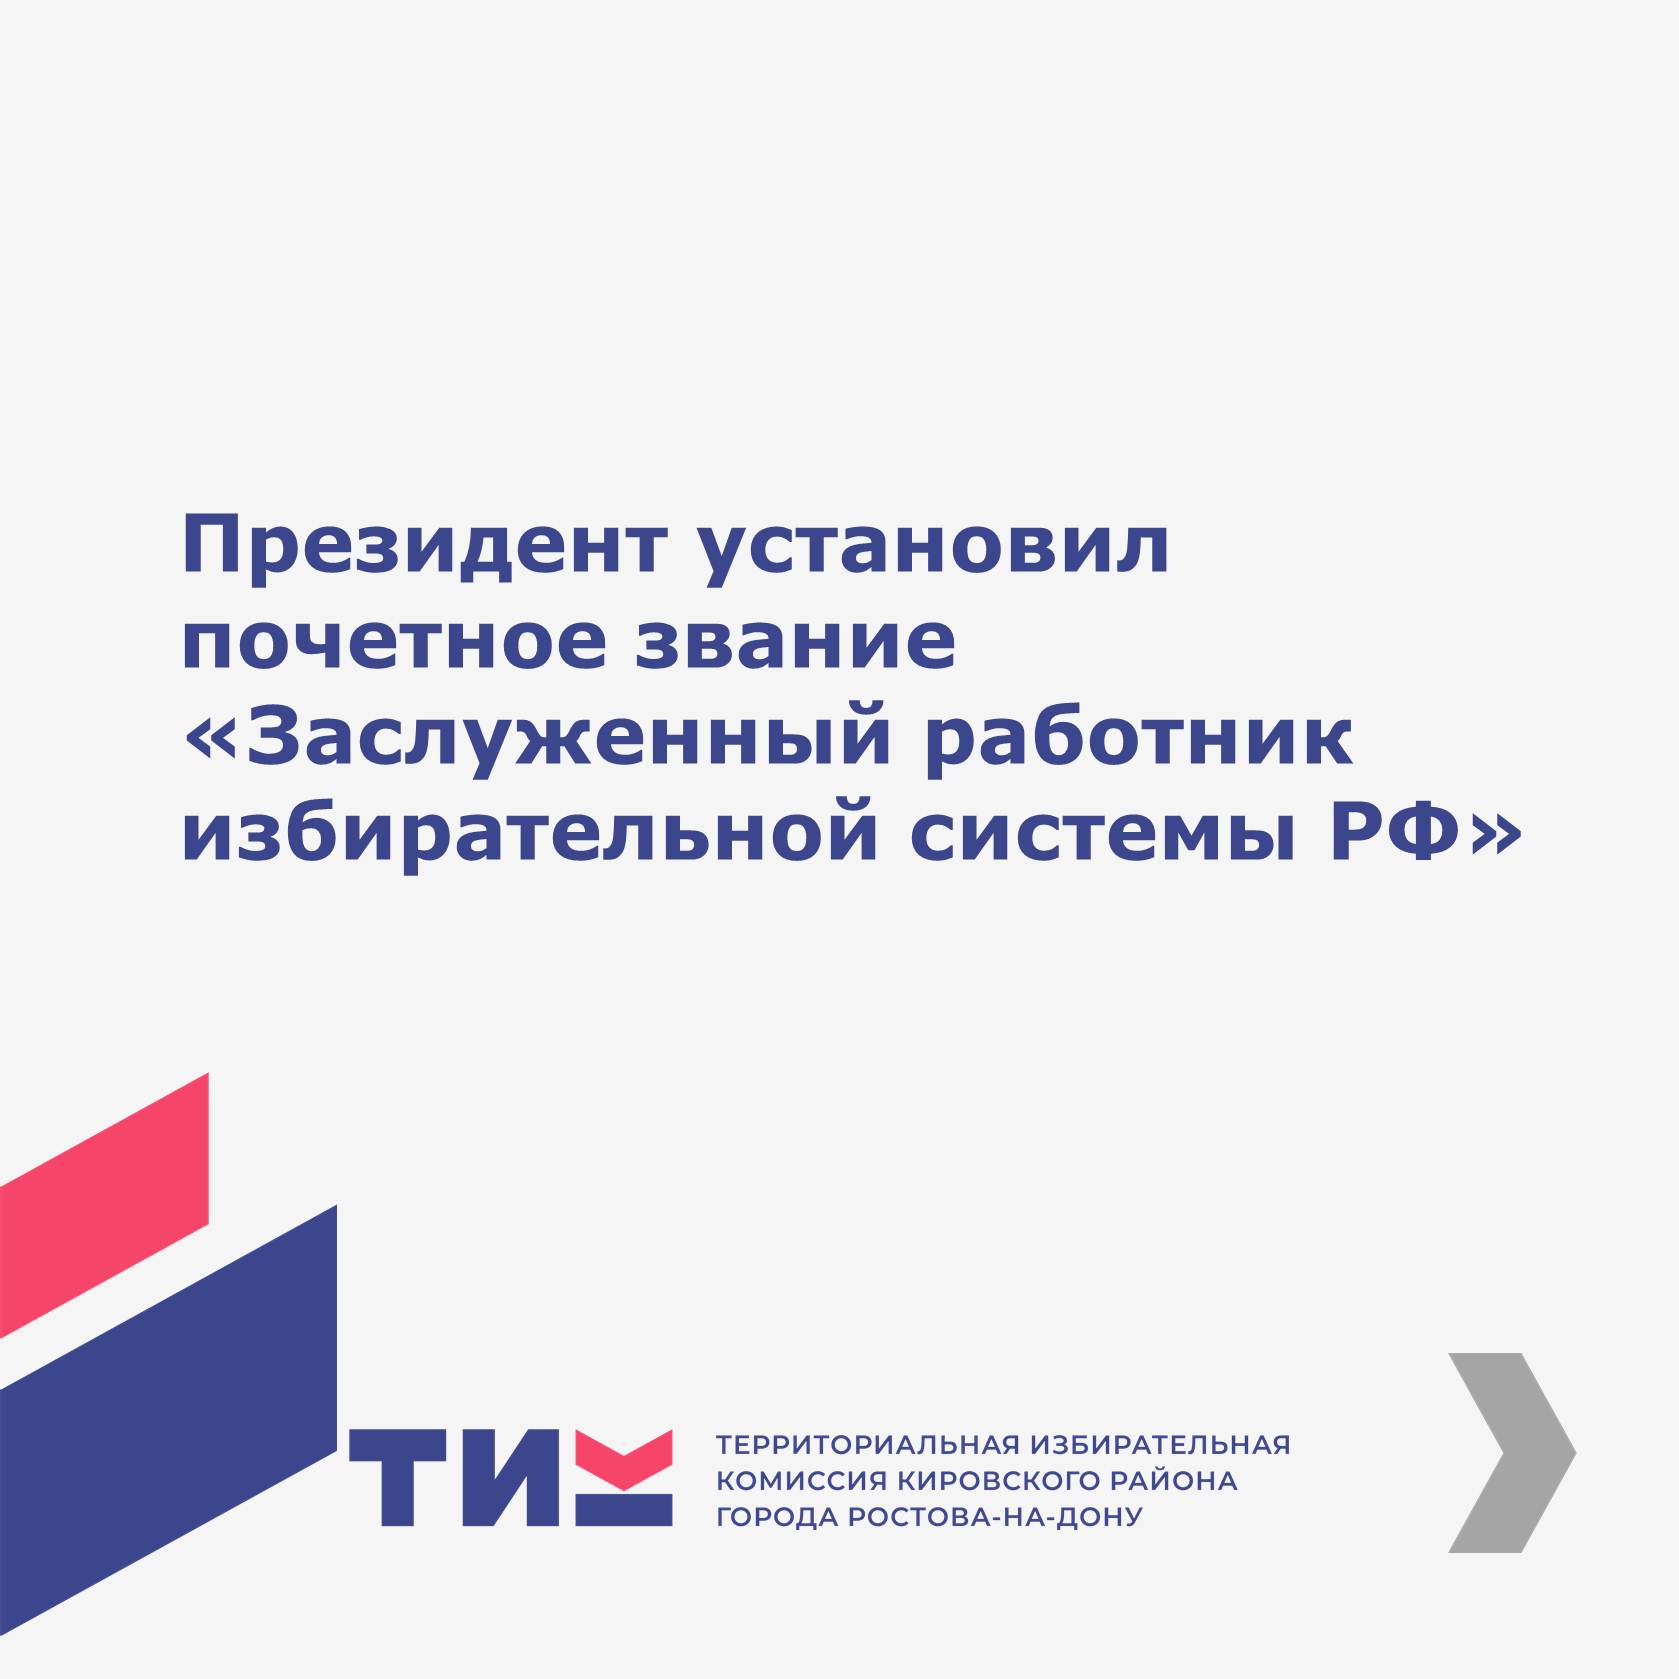 Президент установил почетное звание «Заслуженный работник избирательной системы РФ»